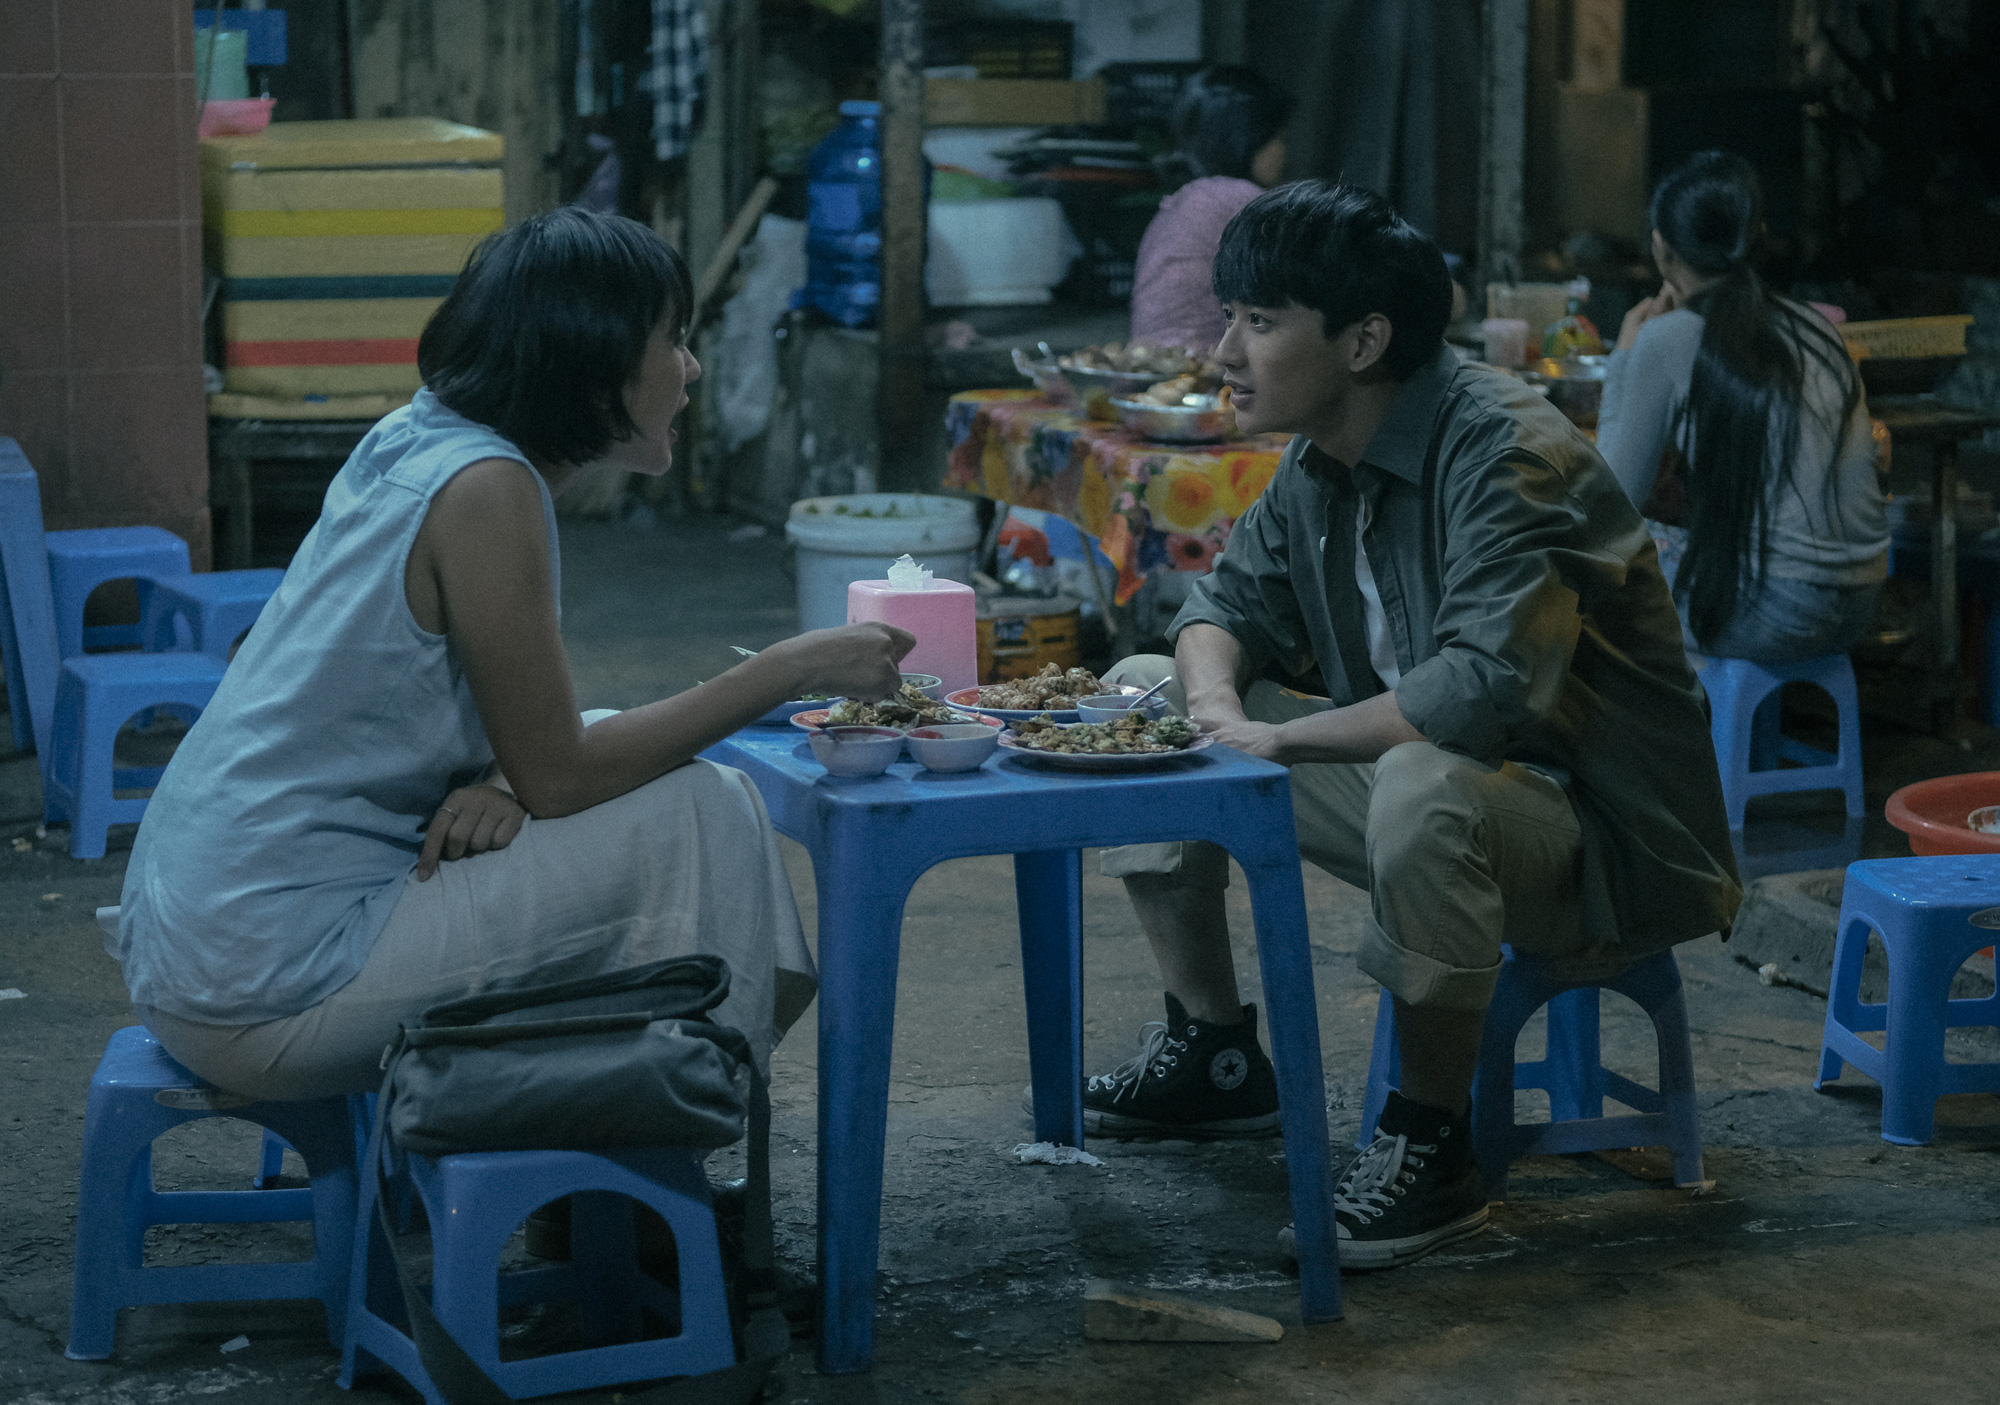 Sài Gòn Trong Cơn Mưa: Thước phim non trẻ nhưng đầy cảm xúc dành cho những kẻ khờ mộng mơ của phương Nam - Ảnh 8.